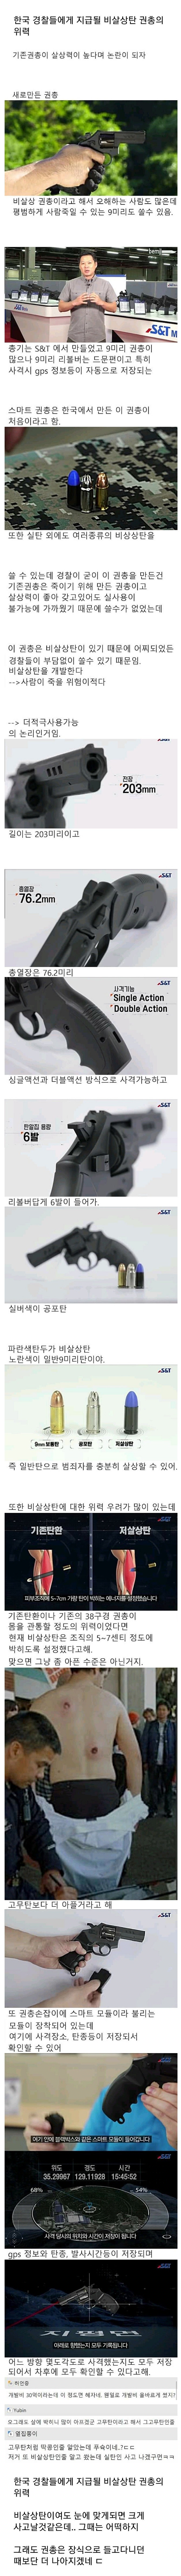 한국 경찰들에게 지급될 비살상탄 권총